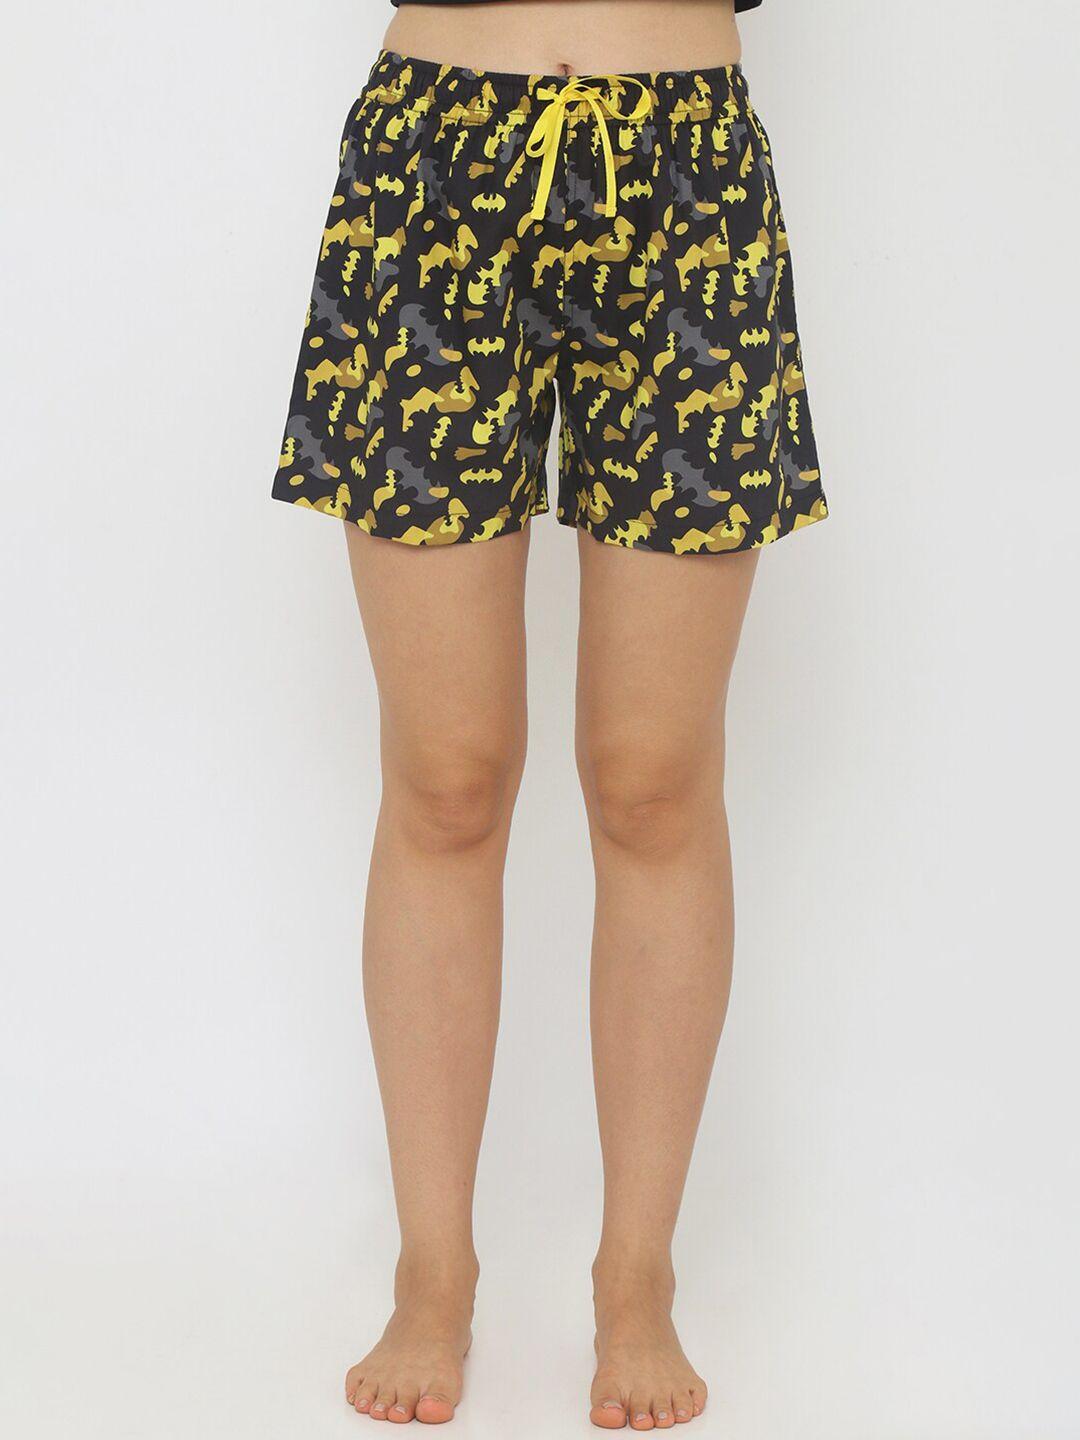 smugglerz-women-yellow-&-black-printed-lounge-shorts